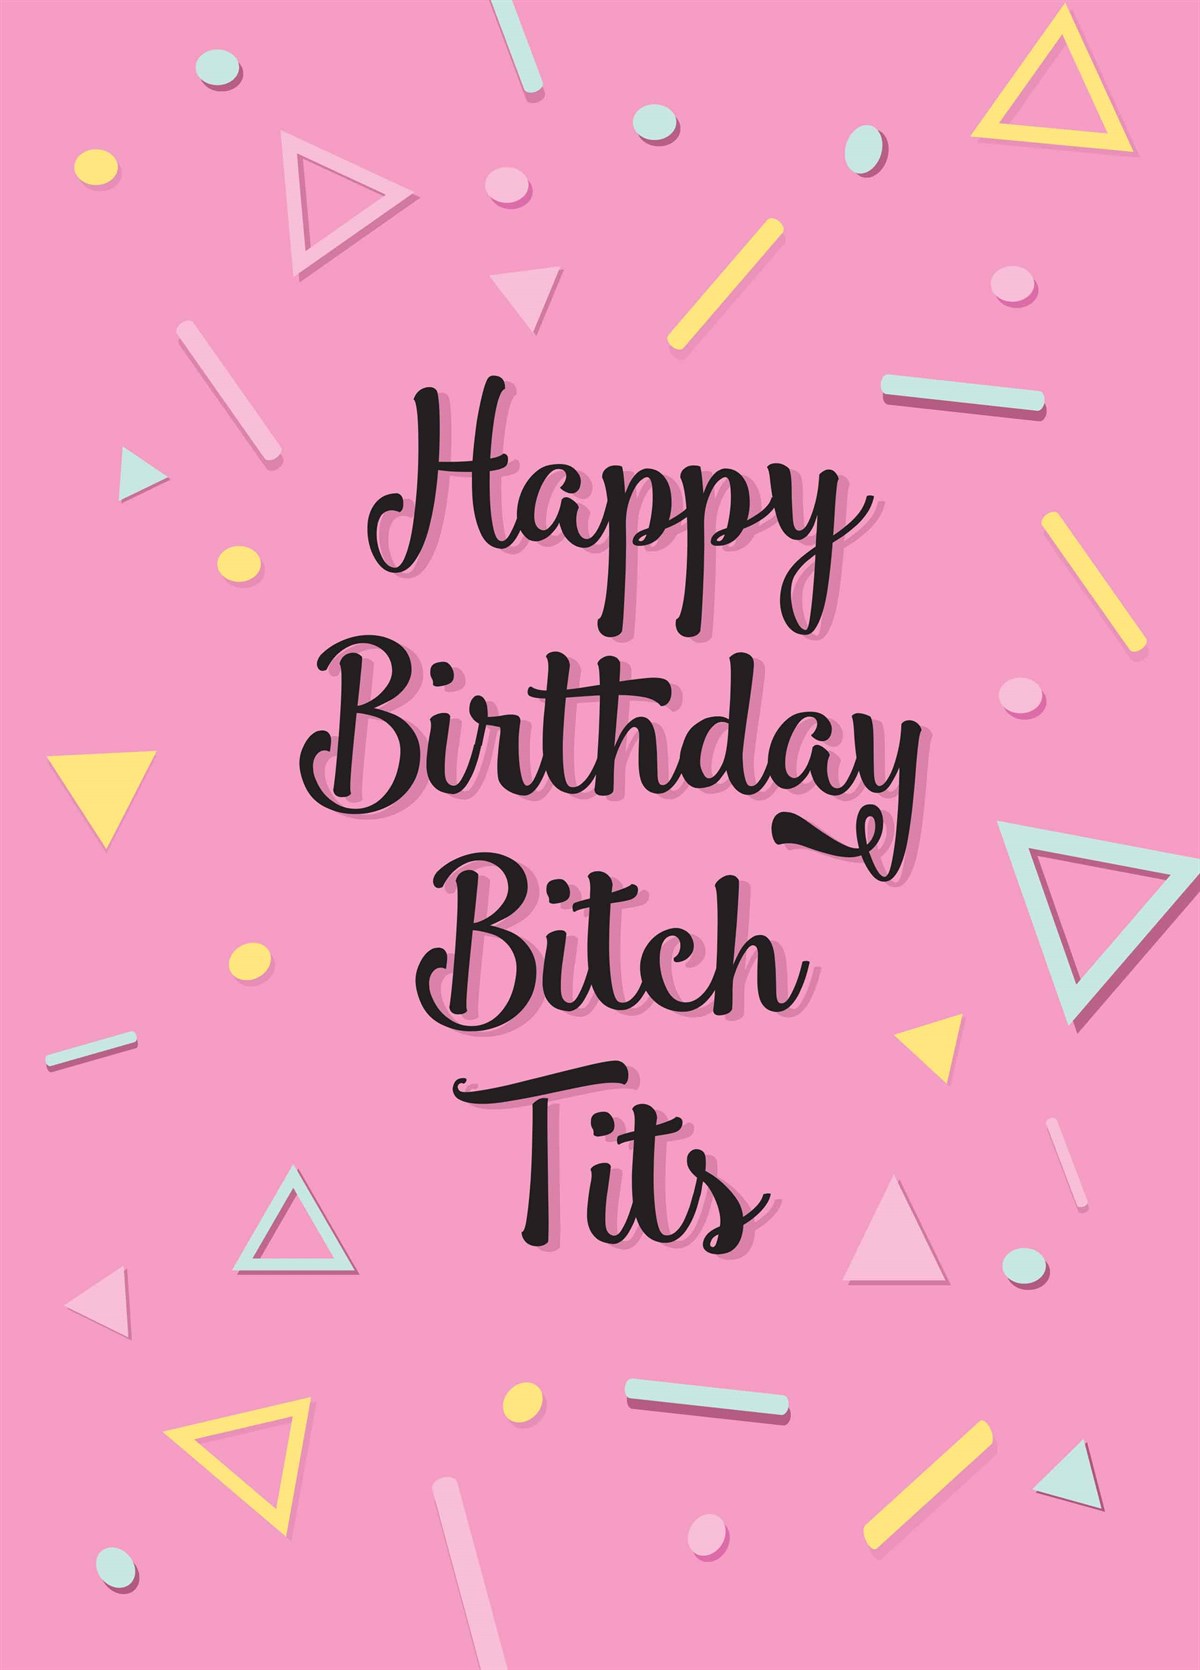 Tits birthday Birthday Best